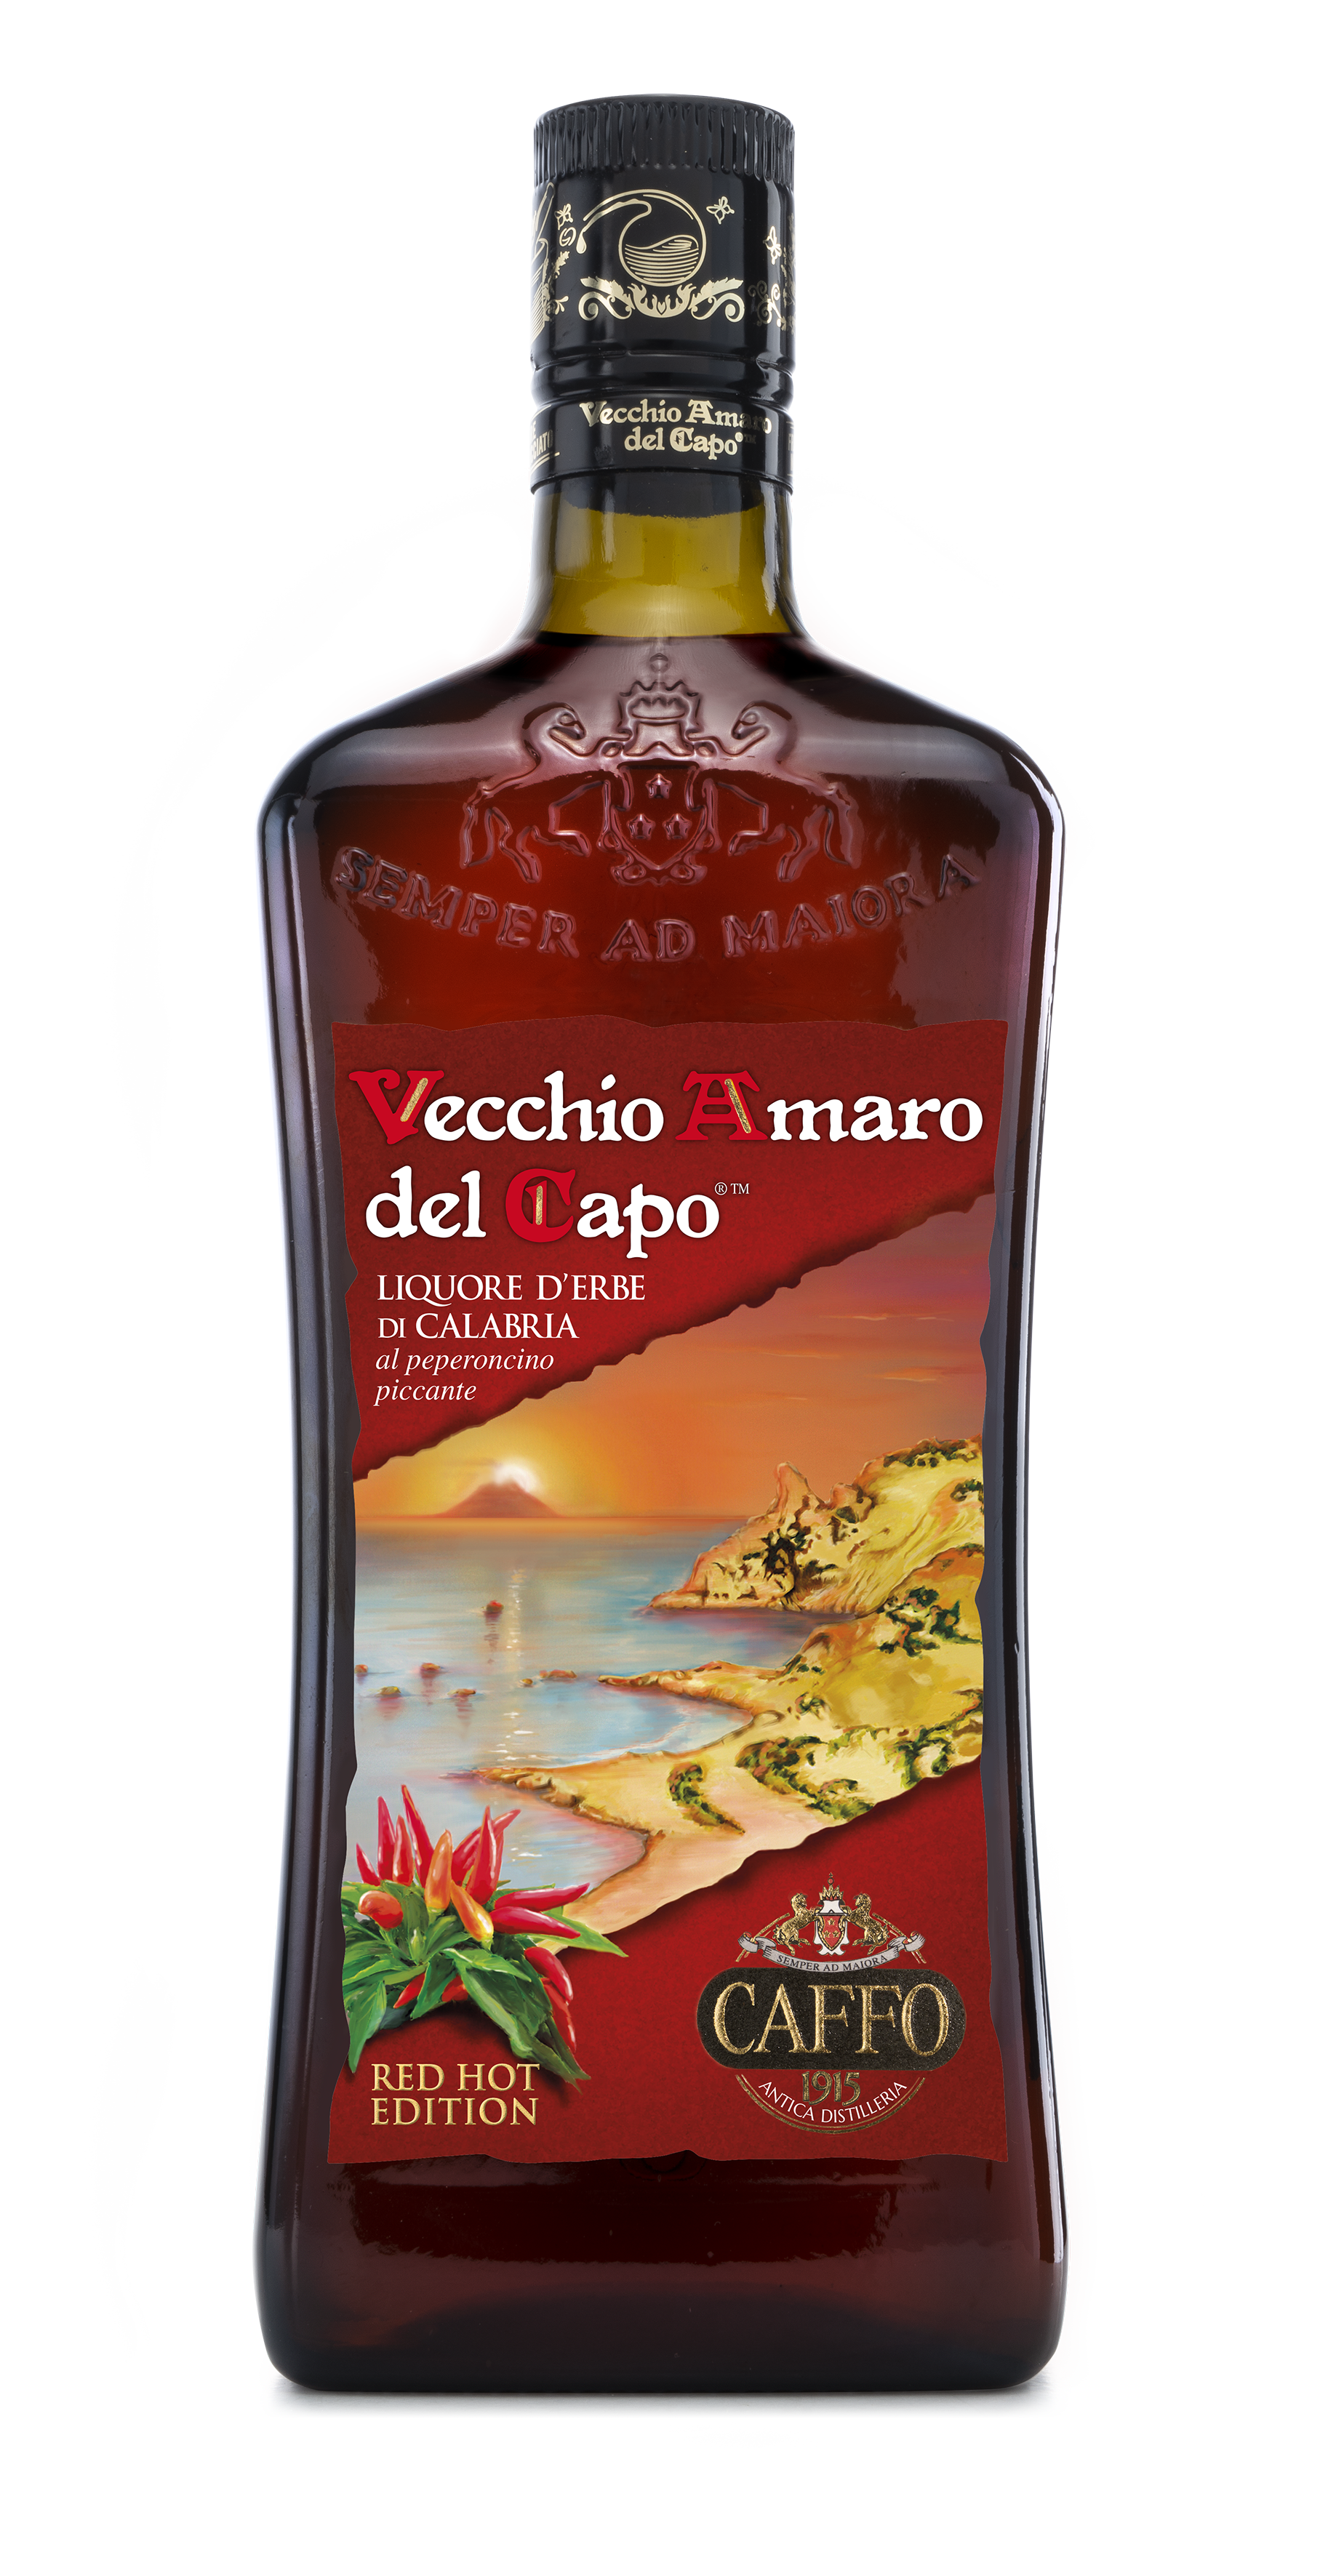 Vecchio Amaro del Capo 'Hot Chili Pepper', Caffo - Skurnik Wines & Spirits